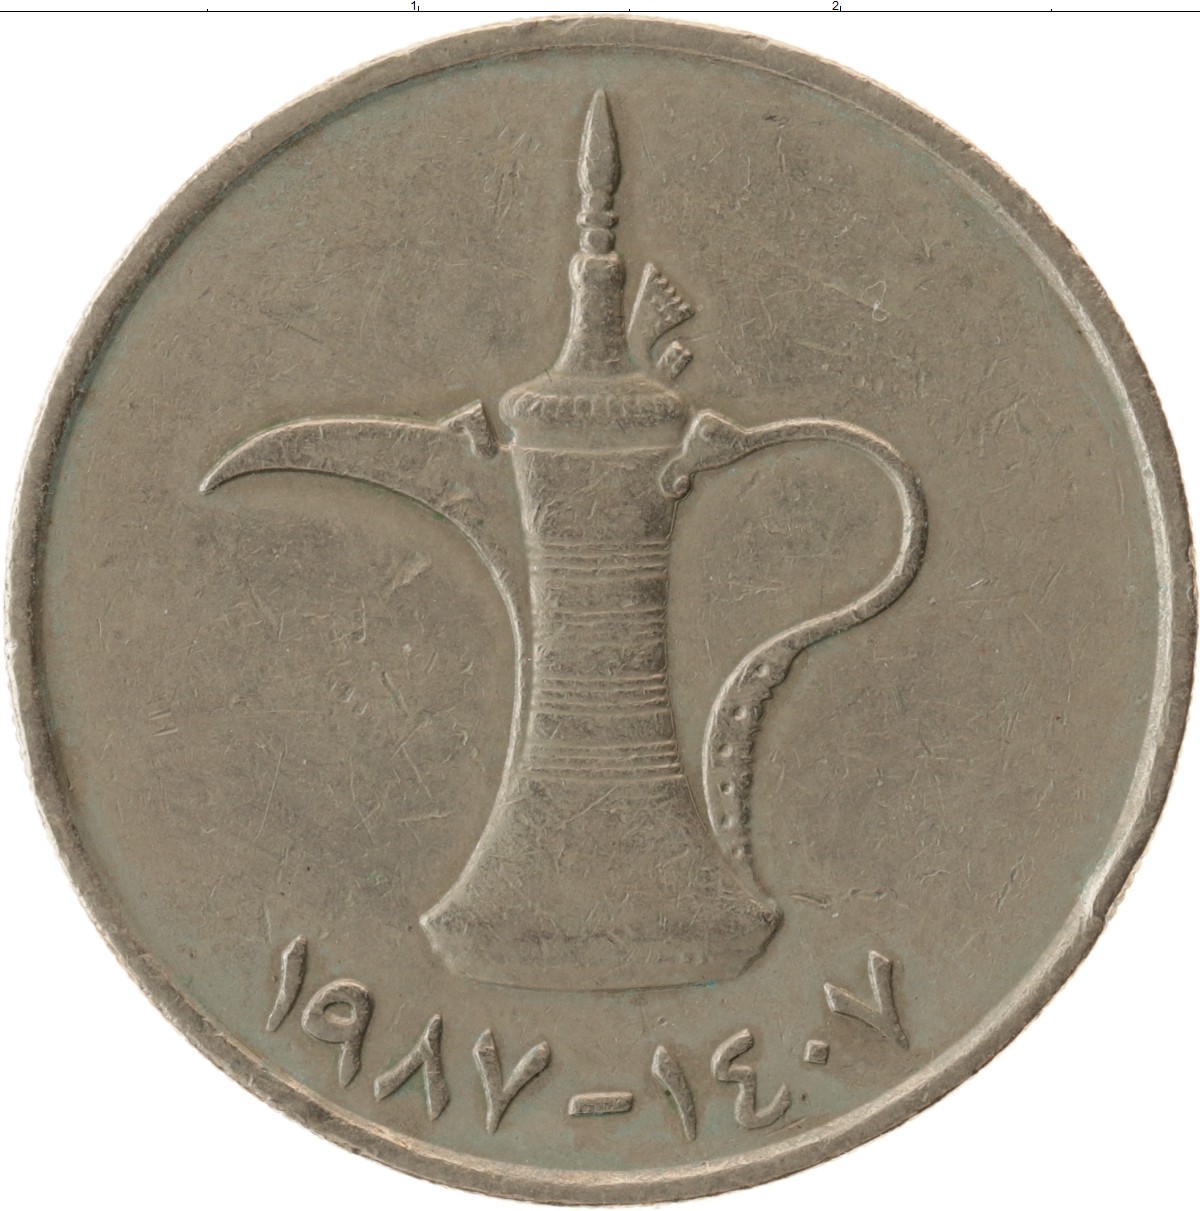 12000 дирхам. 1 Дирхам монета. Монета 1 дирхам (ОАЭ) арабские эмираты.. Арабская монета 1 дирхам. Монеты ОАЭ 1 дирхам.